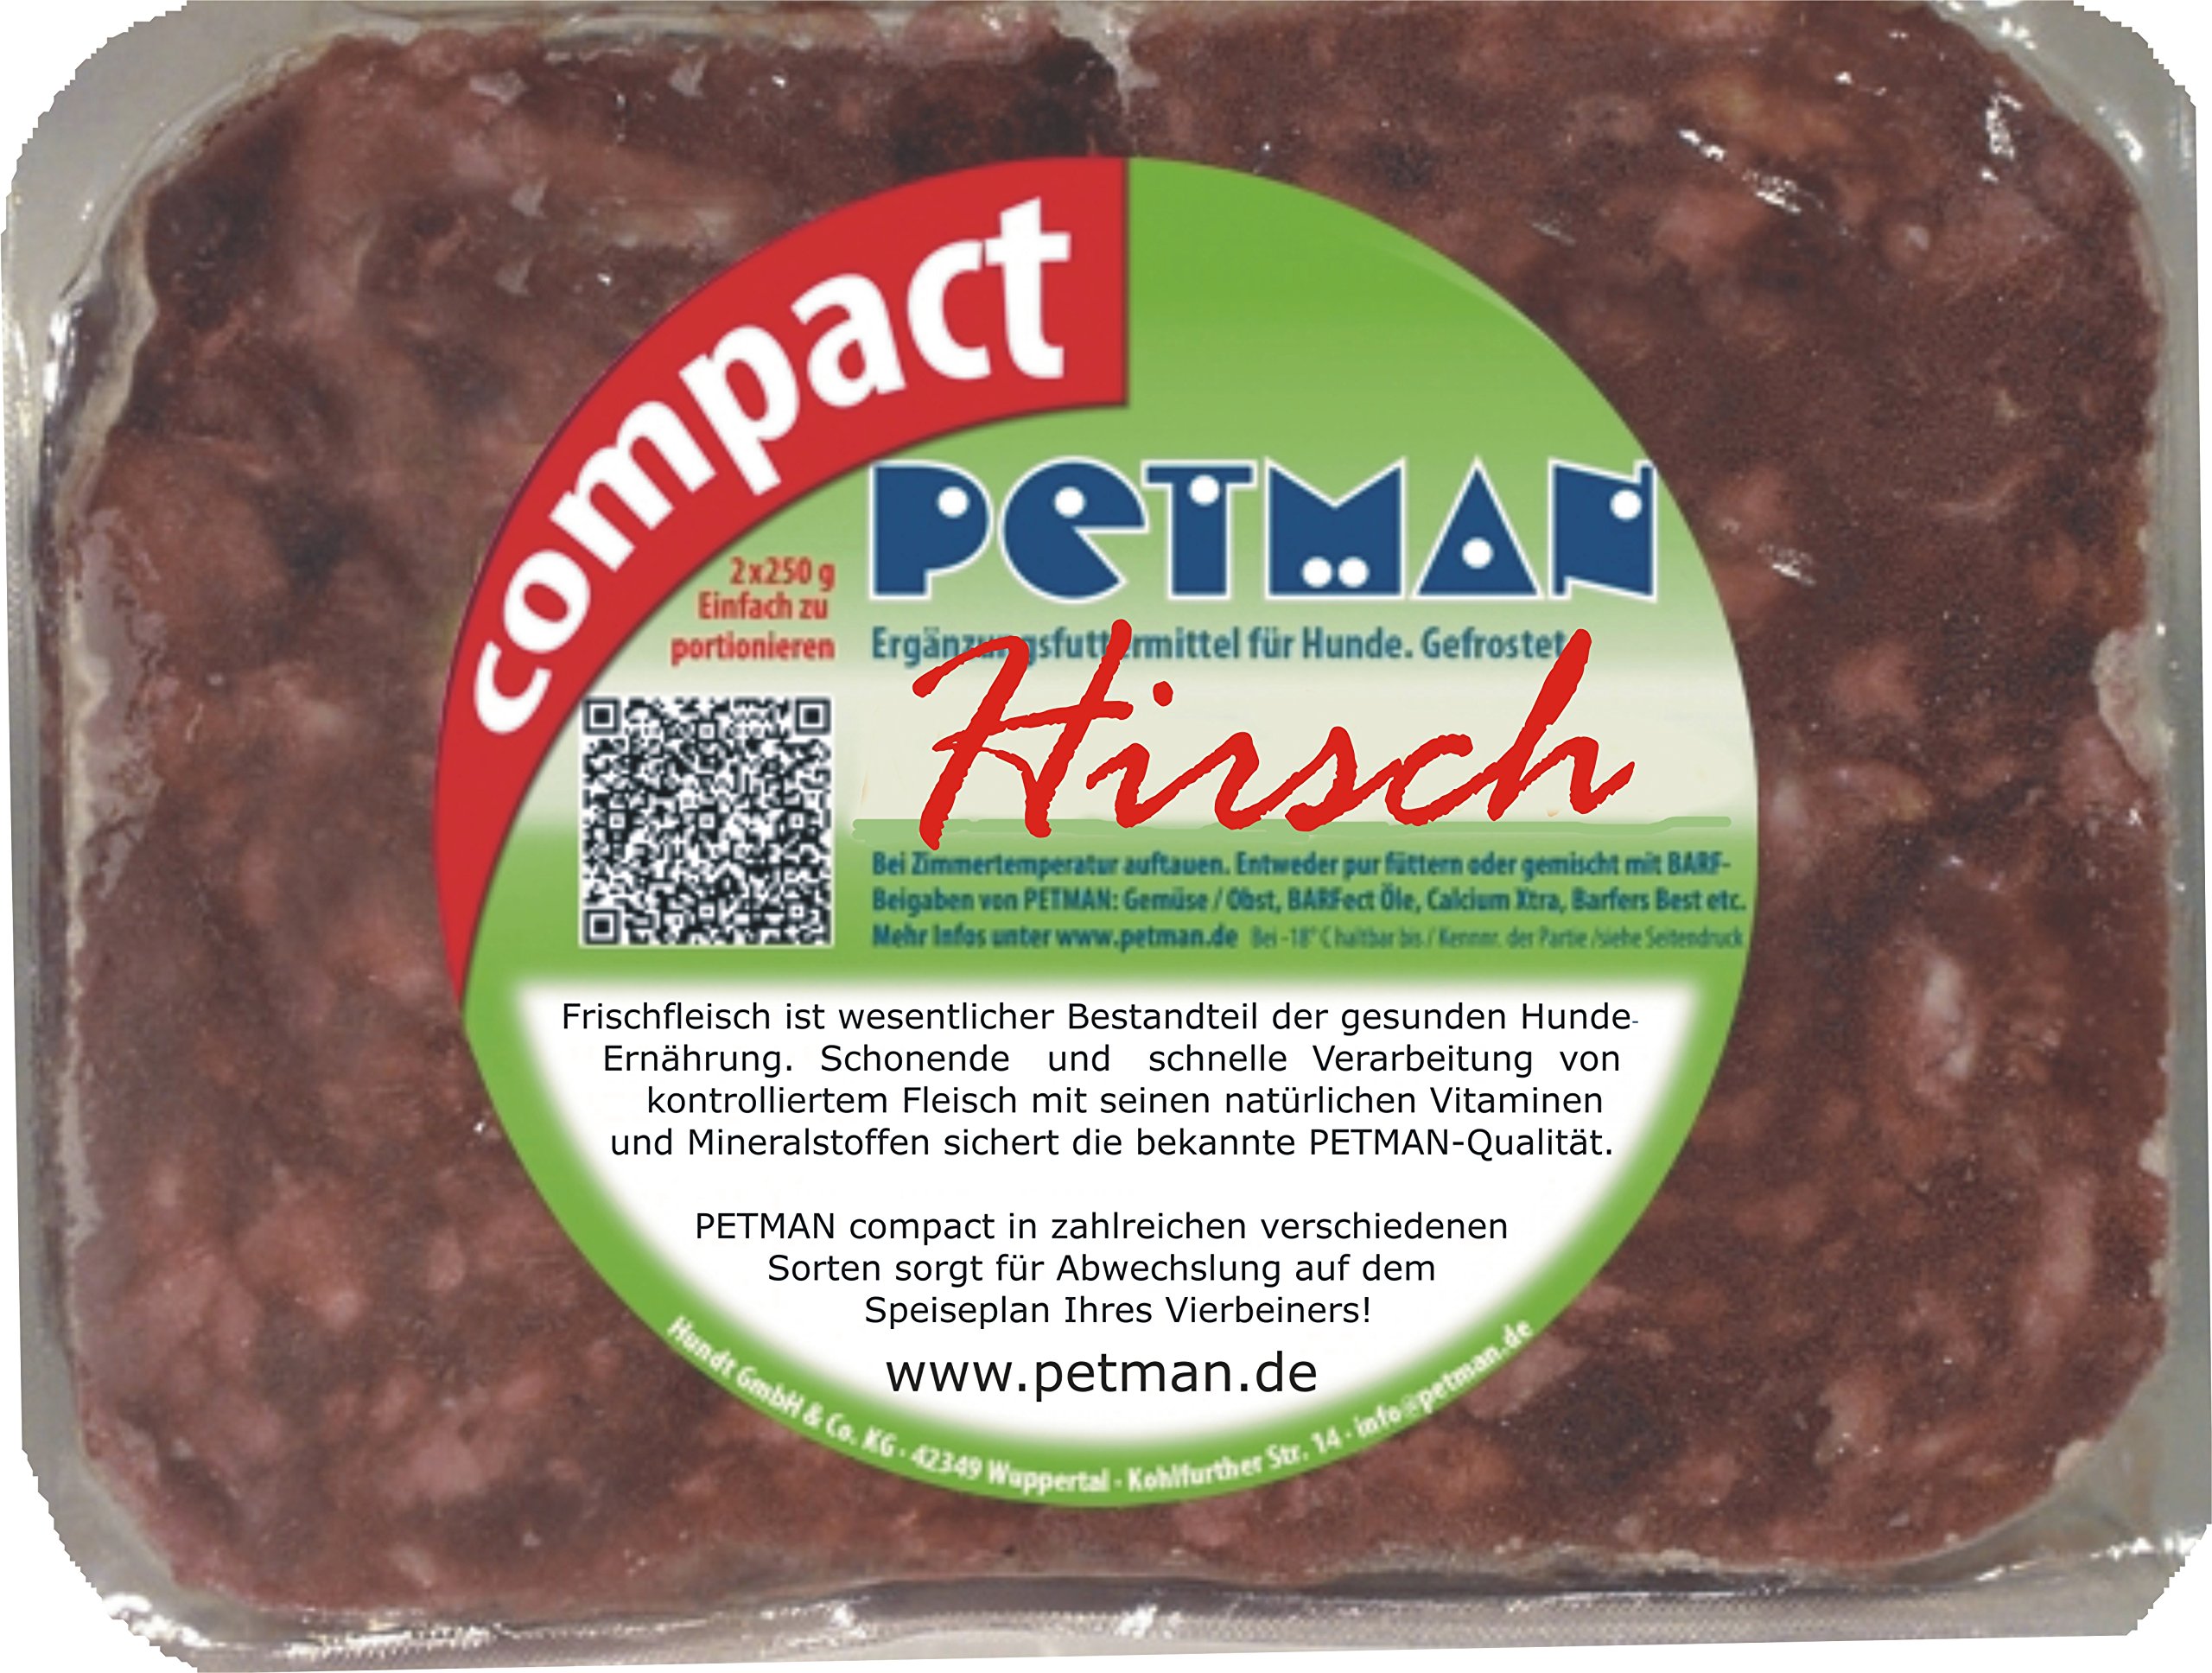 petman compact Hirsch, 12 x 500g-Beutel, Tiefkühlfutter, gesunde, natürliche Ernährung für Hunde, Hundefutter, Barf, B.A.R.F.